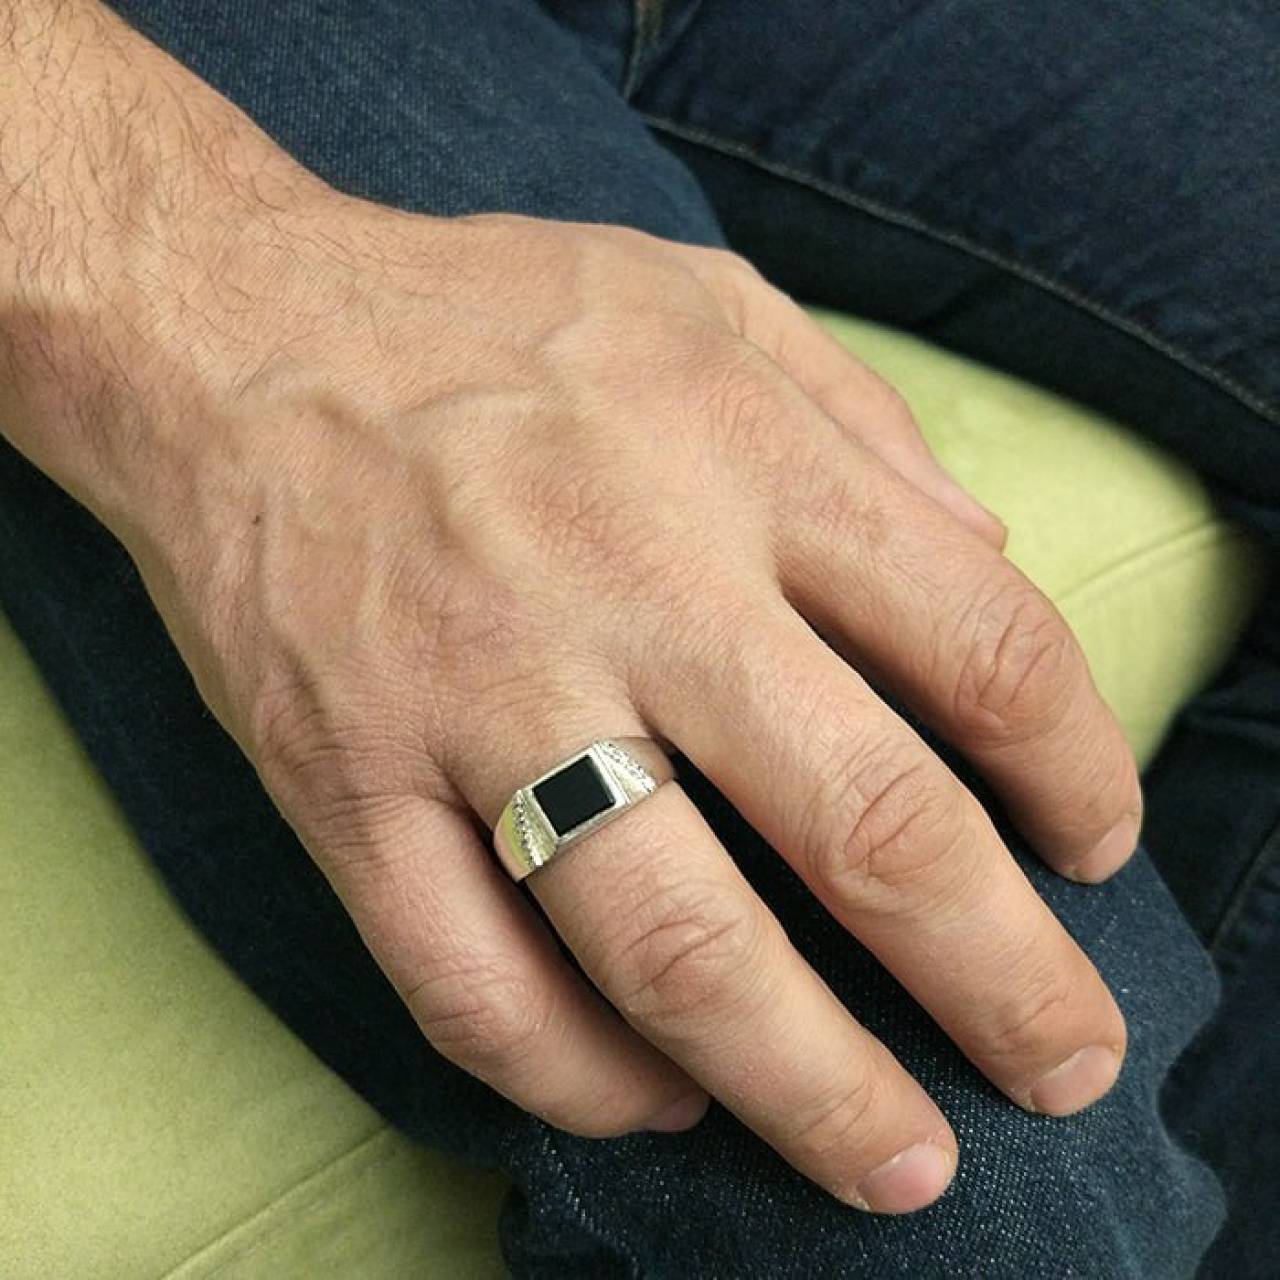 В Гродно мужчина в столовой для малоимущих сорвал золотое кольцо с пальца пенсионера